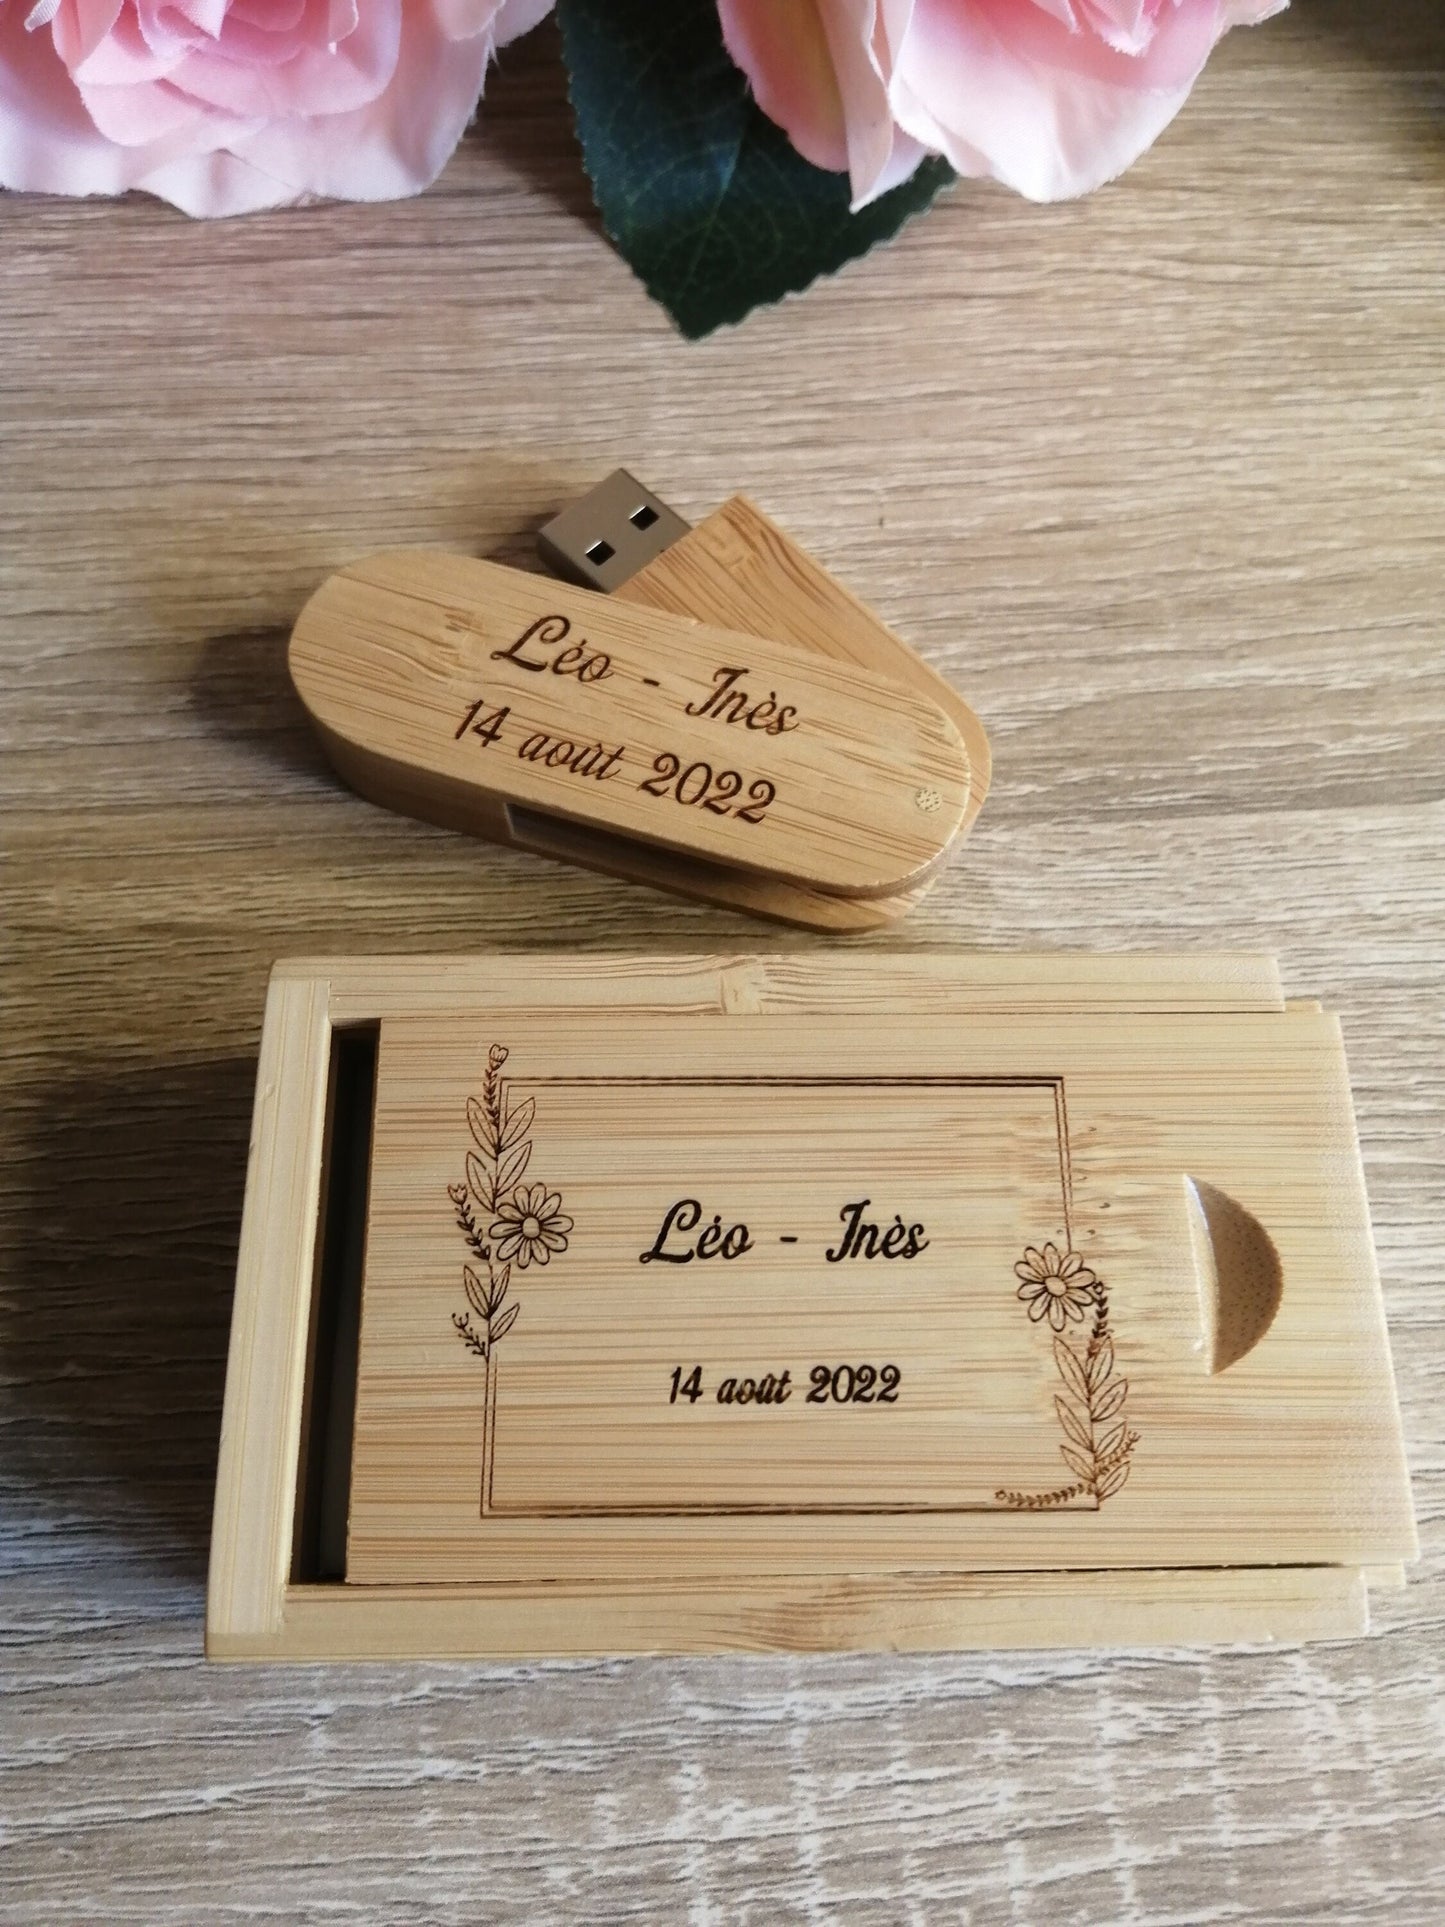 Coffret clé USB de 32Go en bois de Bambou Carbon à personnaliser